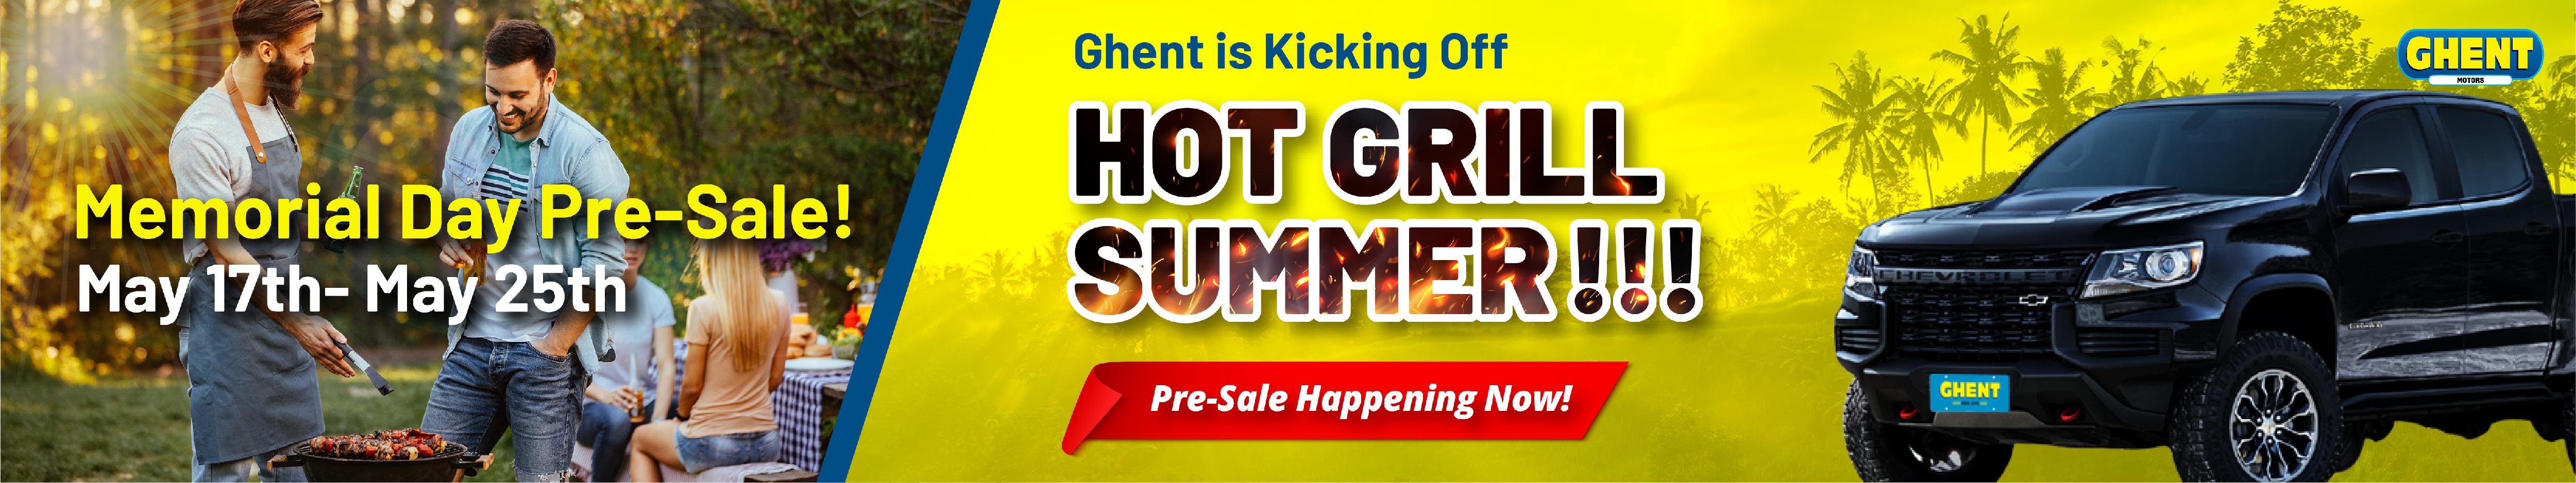 Hot grill summer 